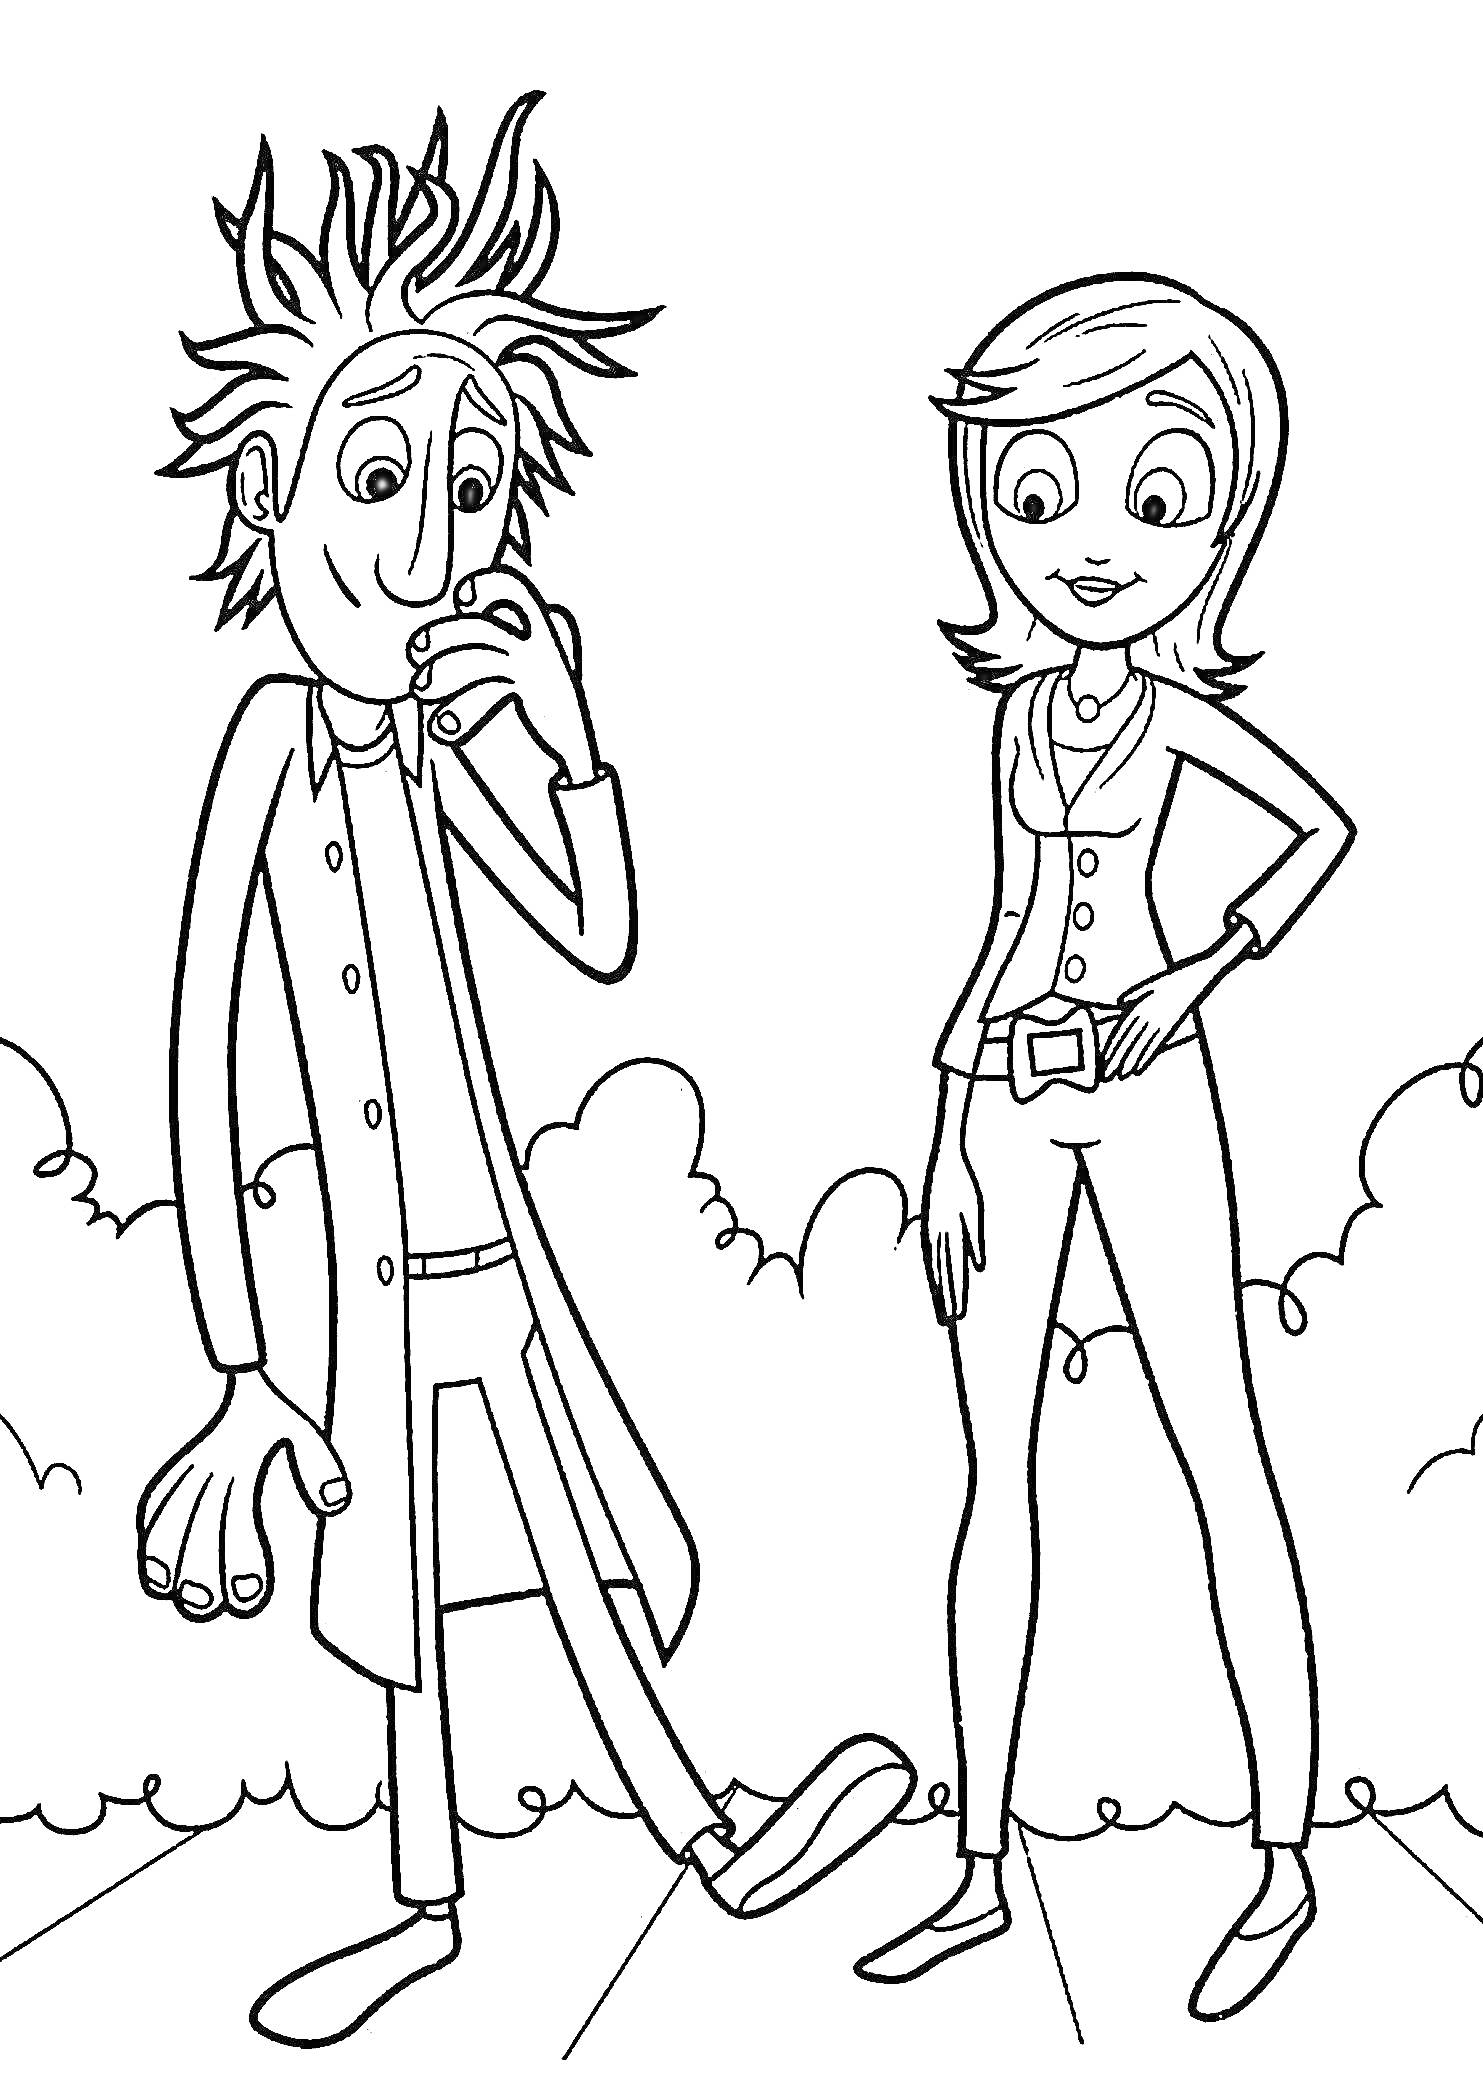 Раскраска Два персонажа из мультфильма, мужчина с взъерошенными волосами и в халате и женщина с короткими волосами на фоне облаков